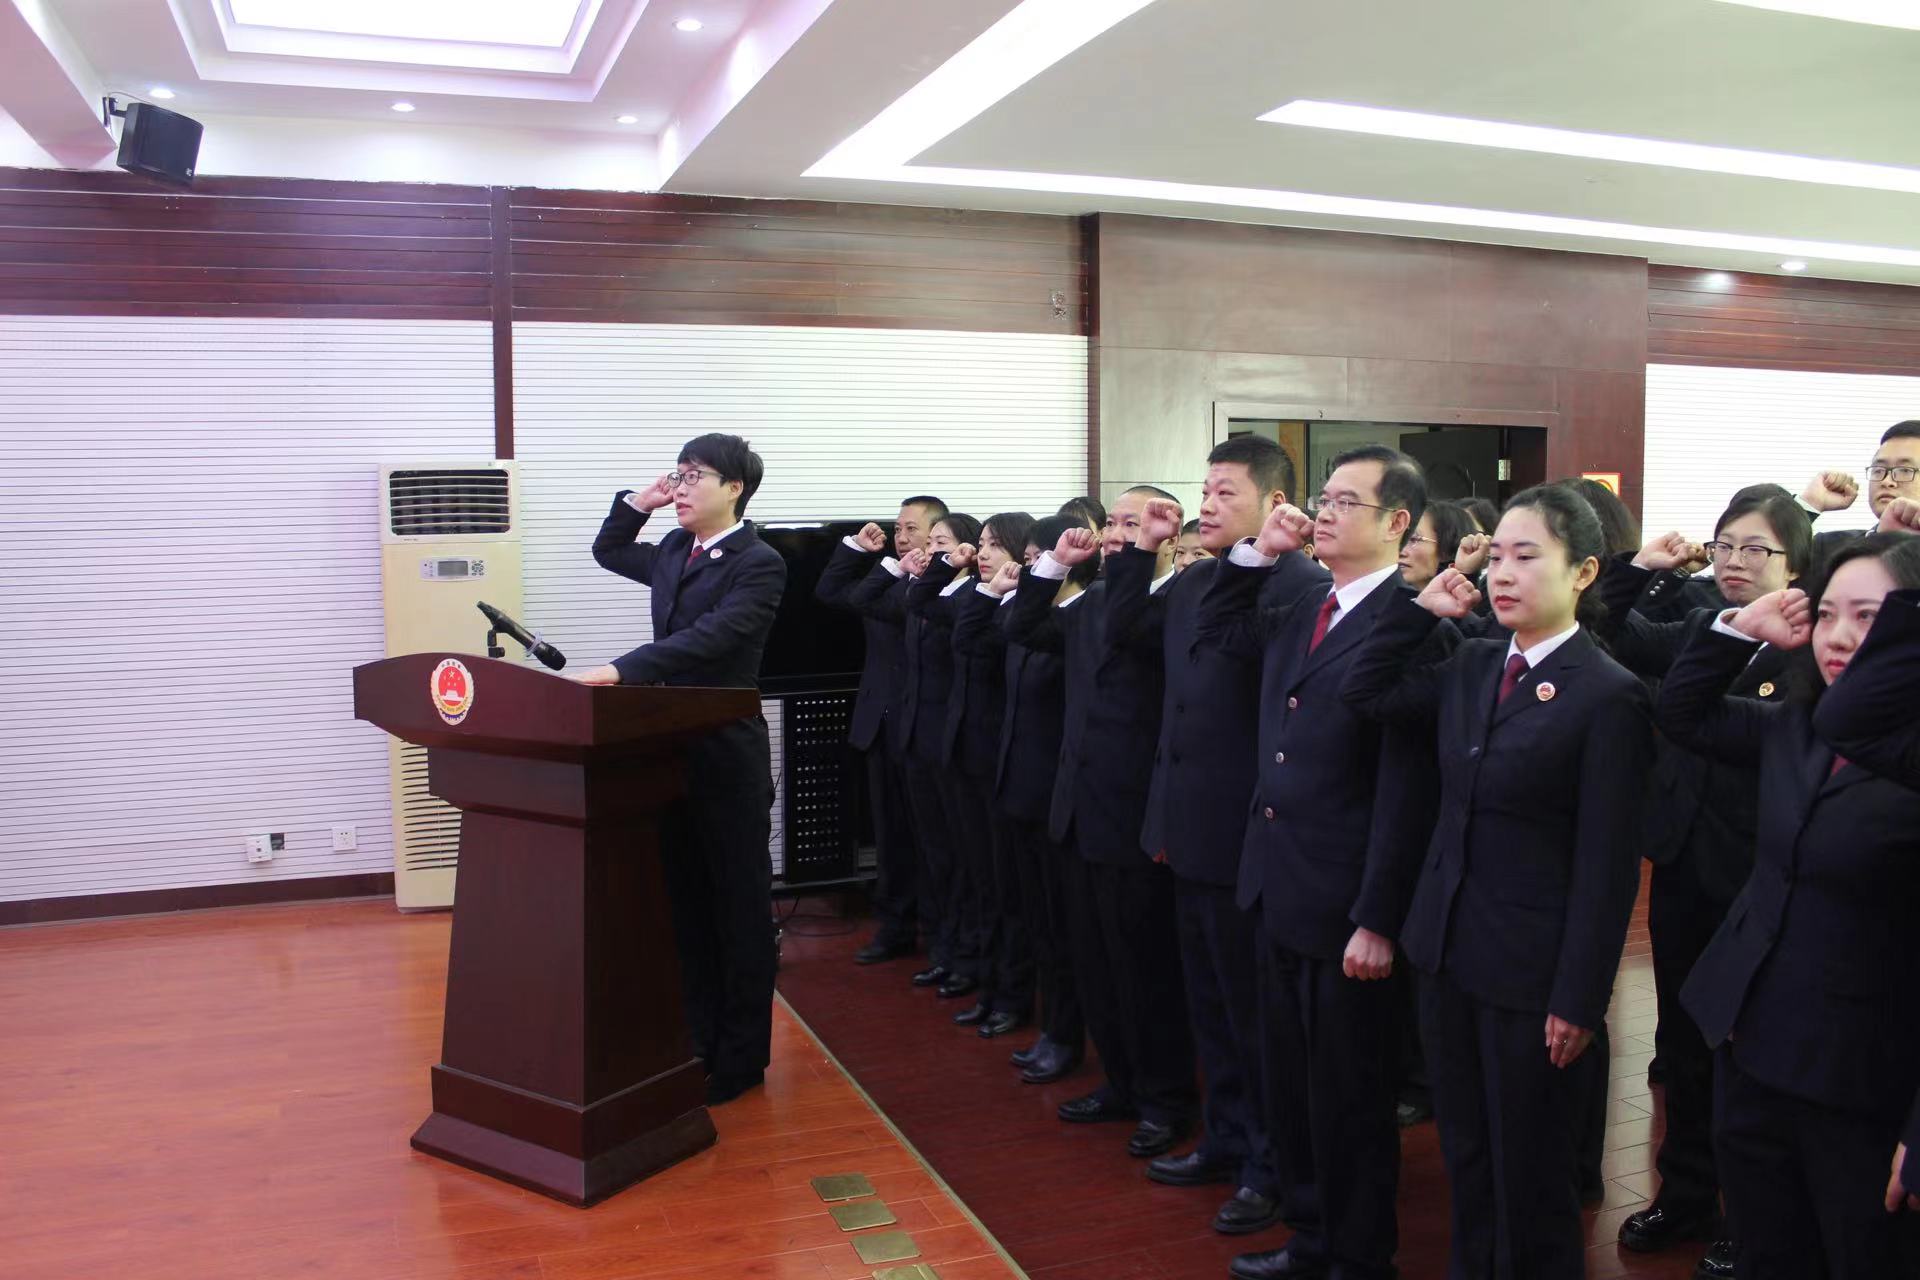 安州区检察院宪法日举行集体宣誓仪式